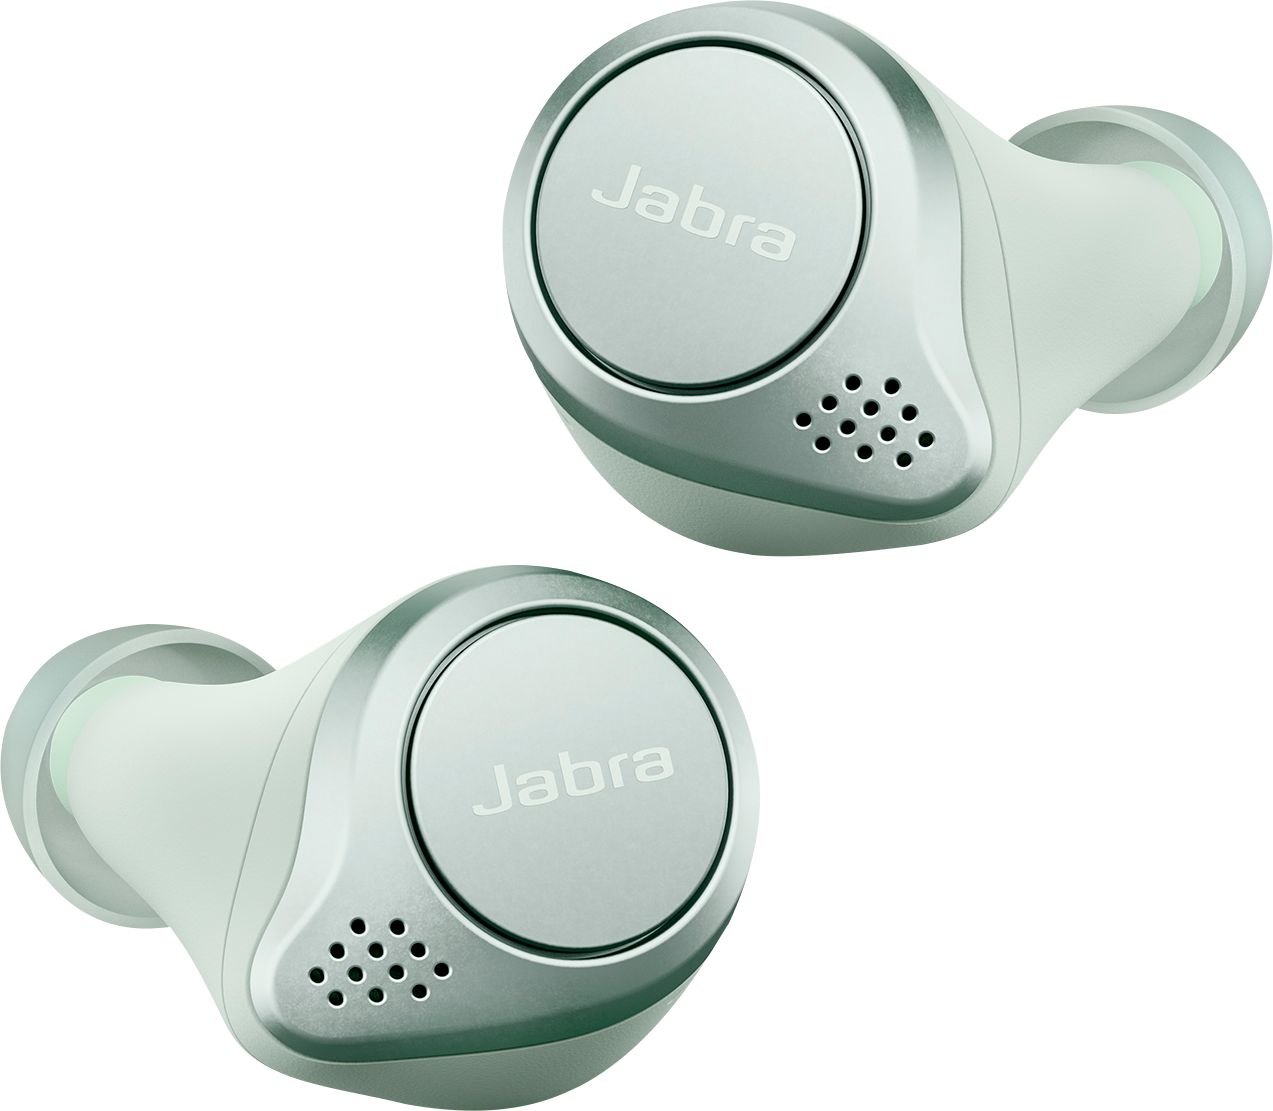 Jabra Active 75t True Noise Cancelling In-Ear Headphones 100-99091002-02 - Best Buy